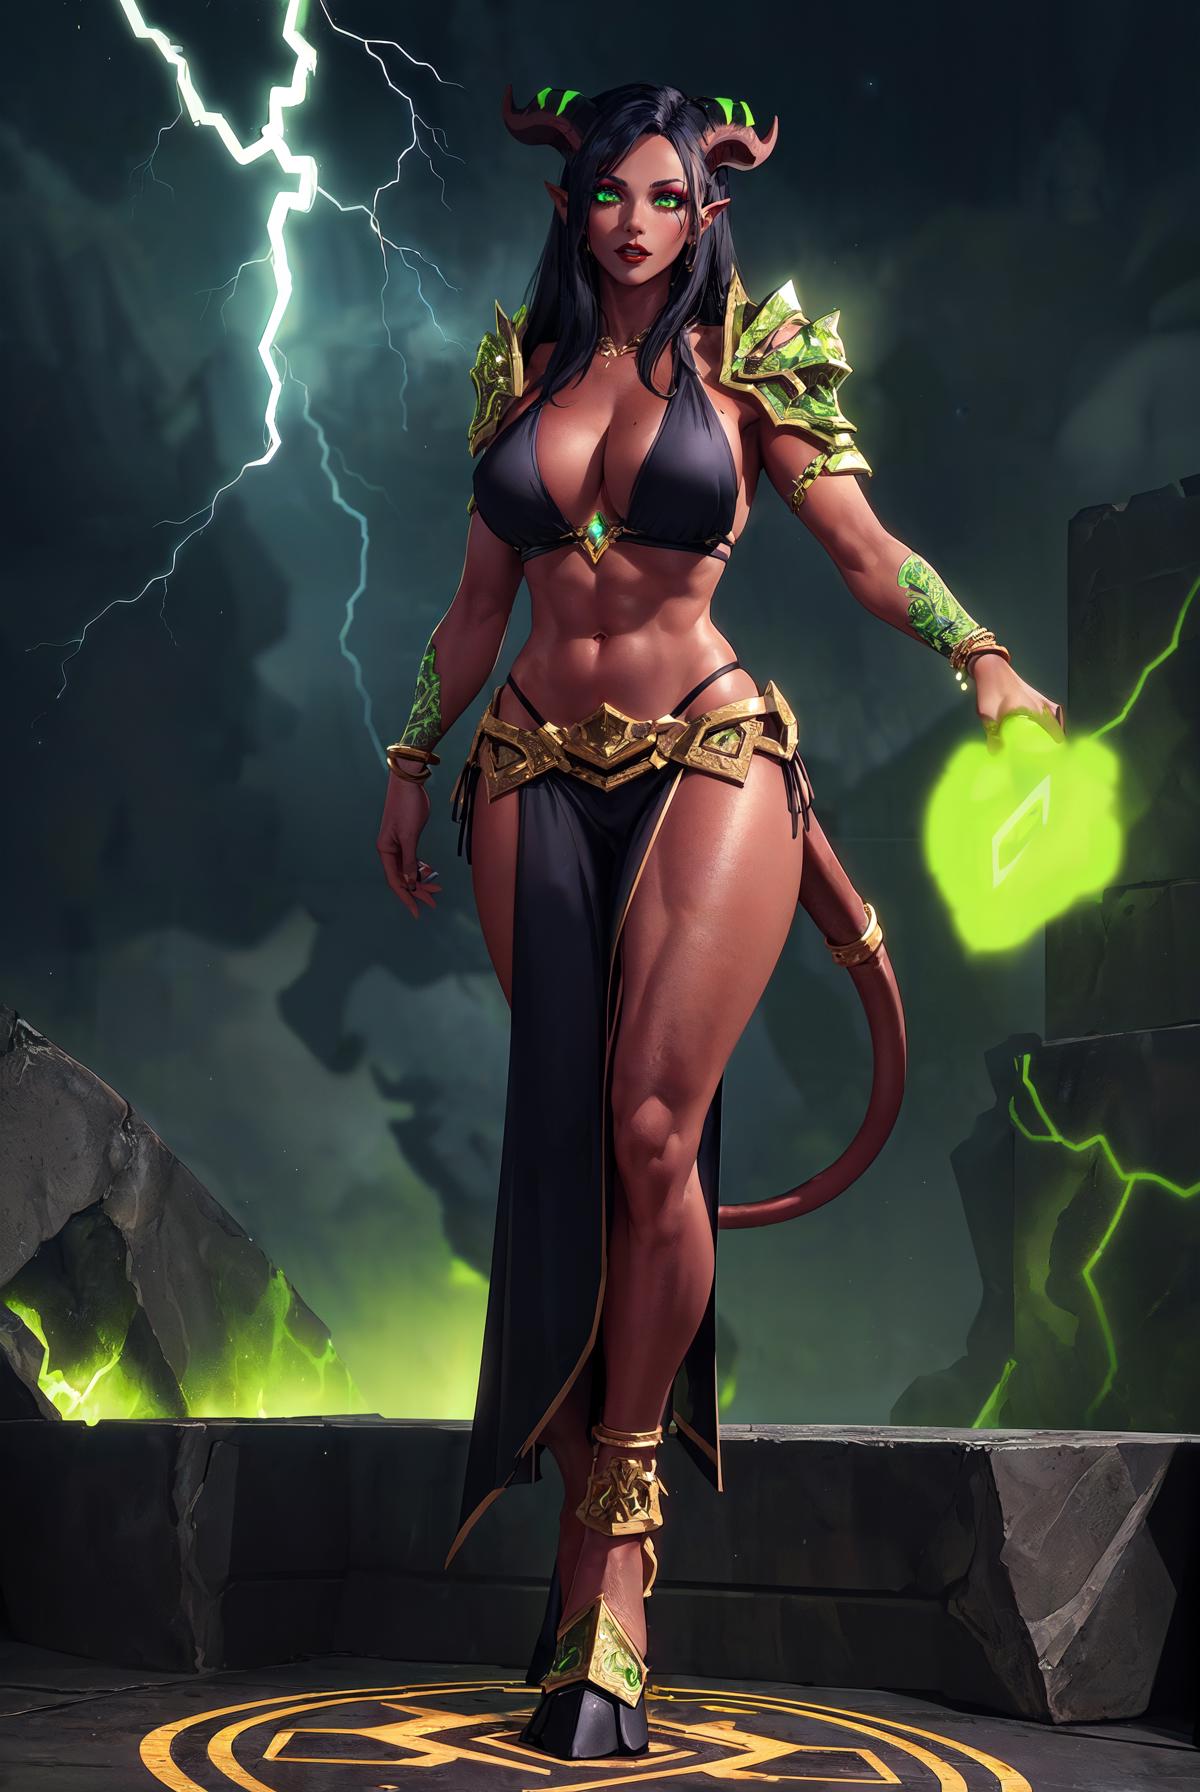 Eredar Female Futa World Of Warcraft NSFW SFW V1 0 Stable